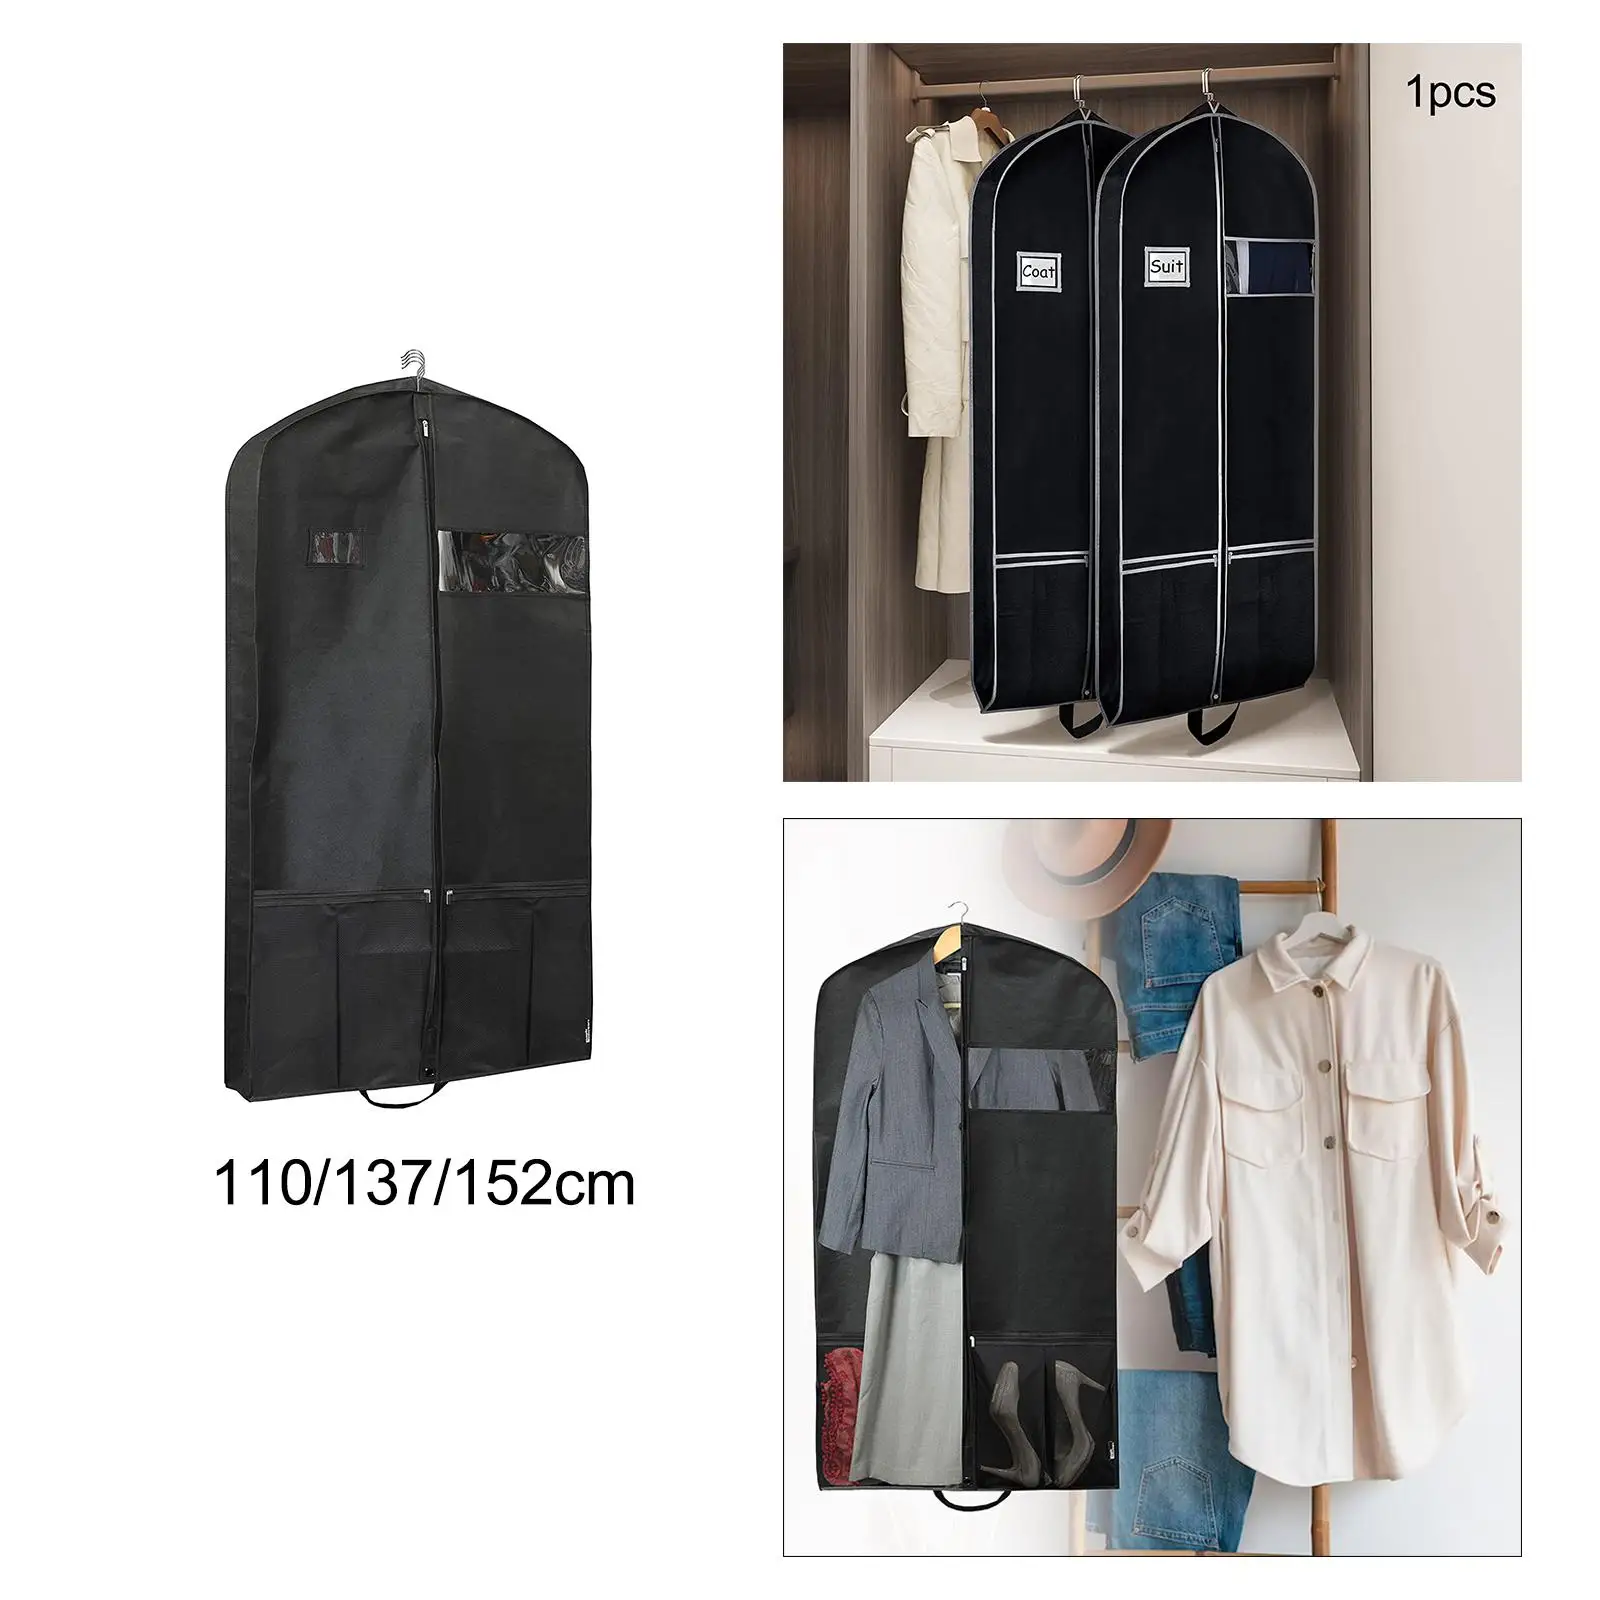 Garment Bag Coat Covers Water Resistance for Dress, Jacket, Uniform Suit Bag